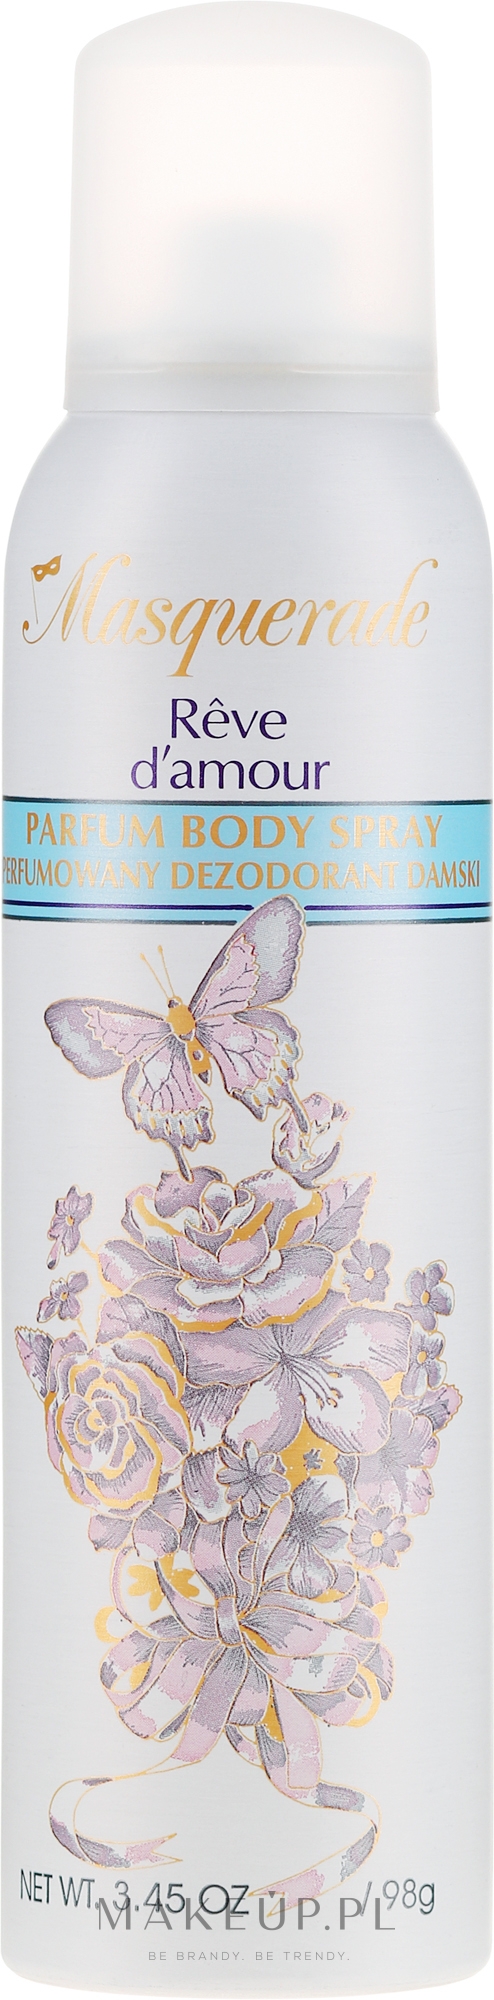 Perfumowany dezodorant damski - Masquerade Reve d'Amour Deo Spray — Zdjęcie 150 ml